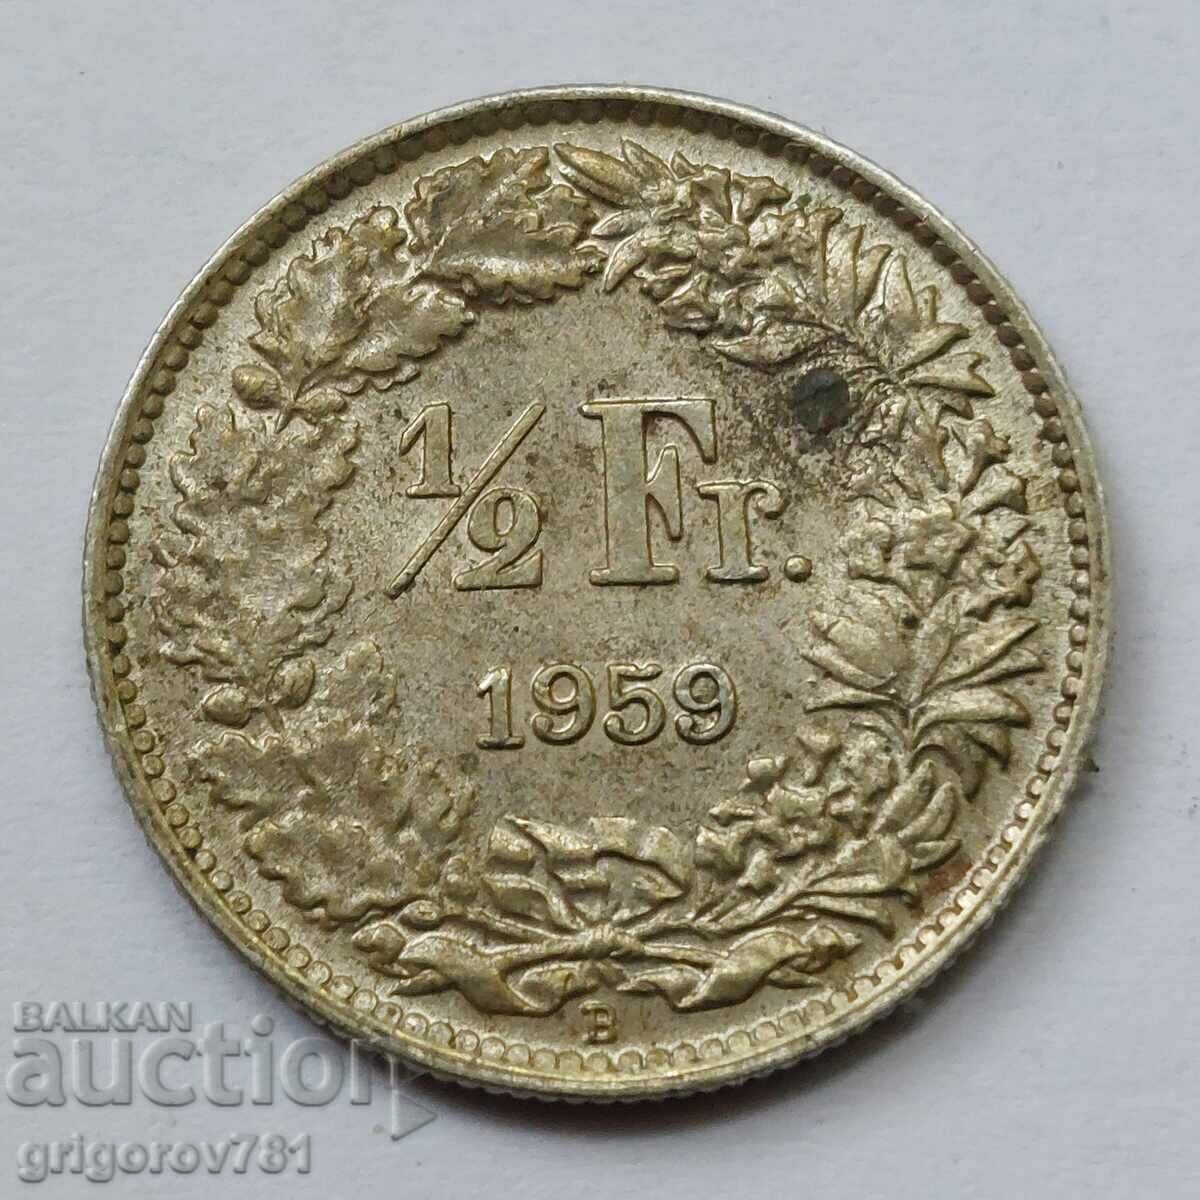 Ασημένιο φράγκο 1/2 Ελβετία 1959 Β - Ασημένιο νόμισμα #7